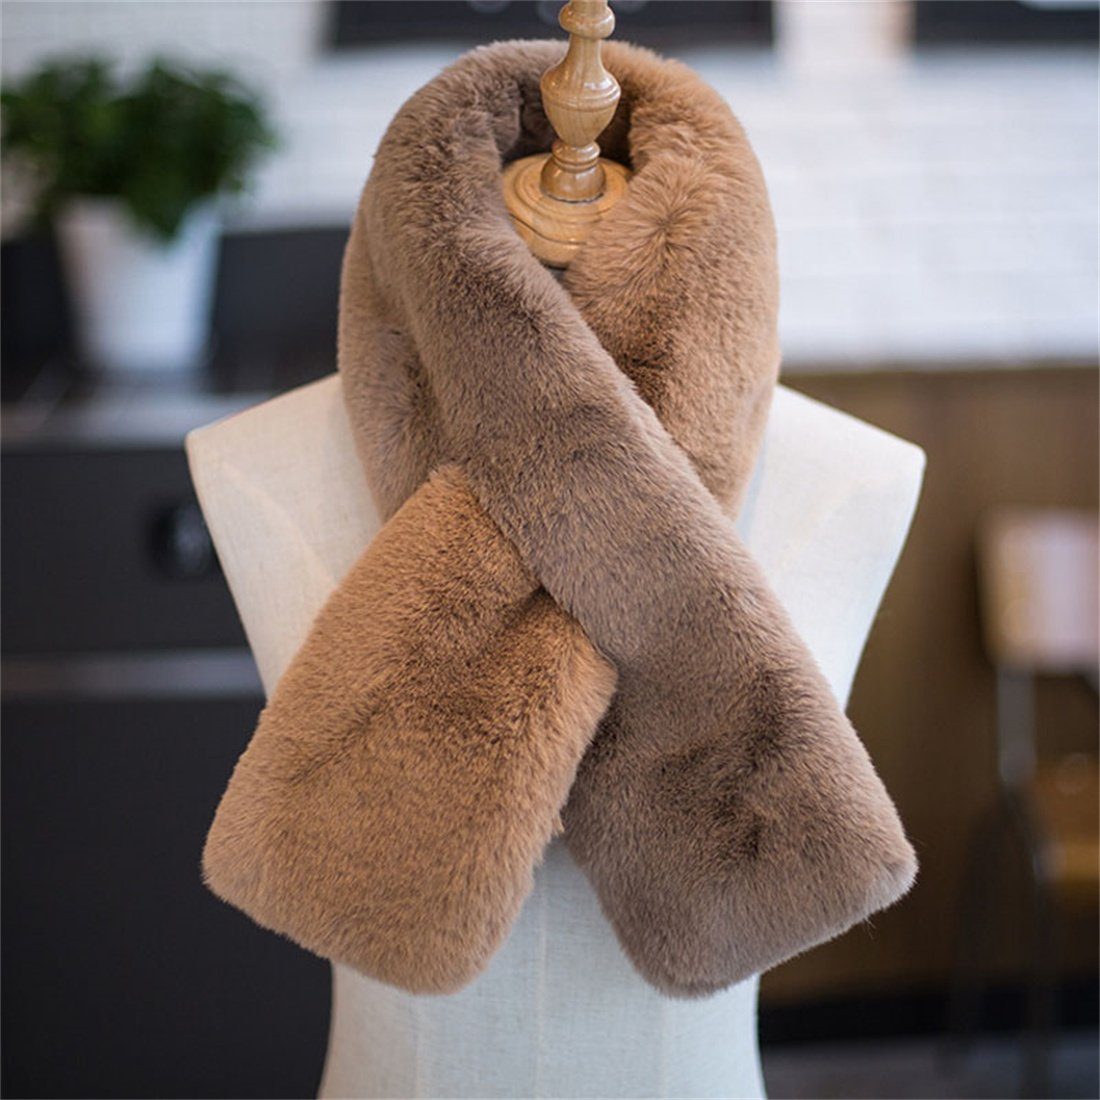 Damen Wintermode Rosa Nachahmung DÖRÖY verdickt warmen Schal Pelz Modeschal Schal,